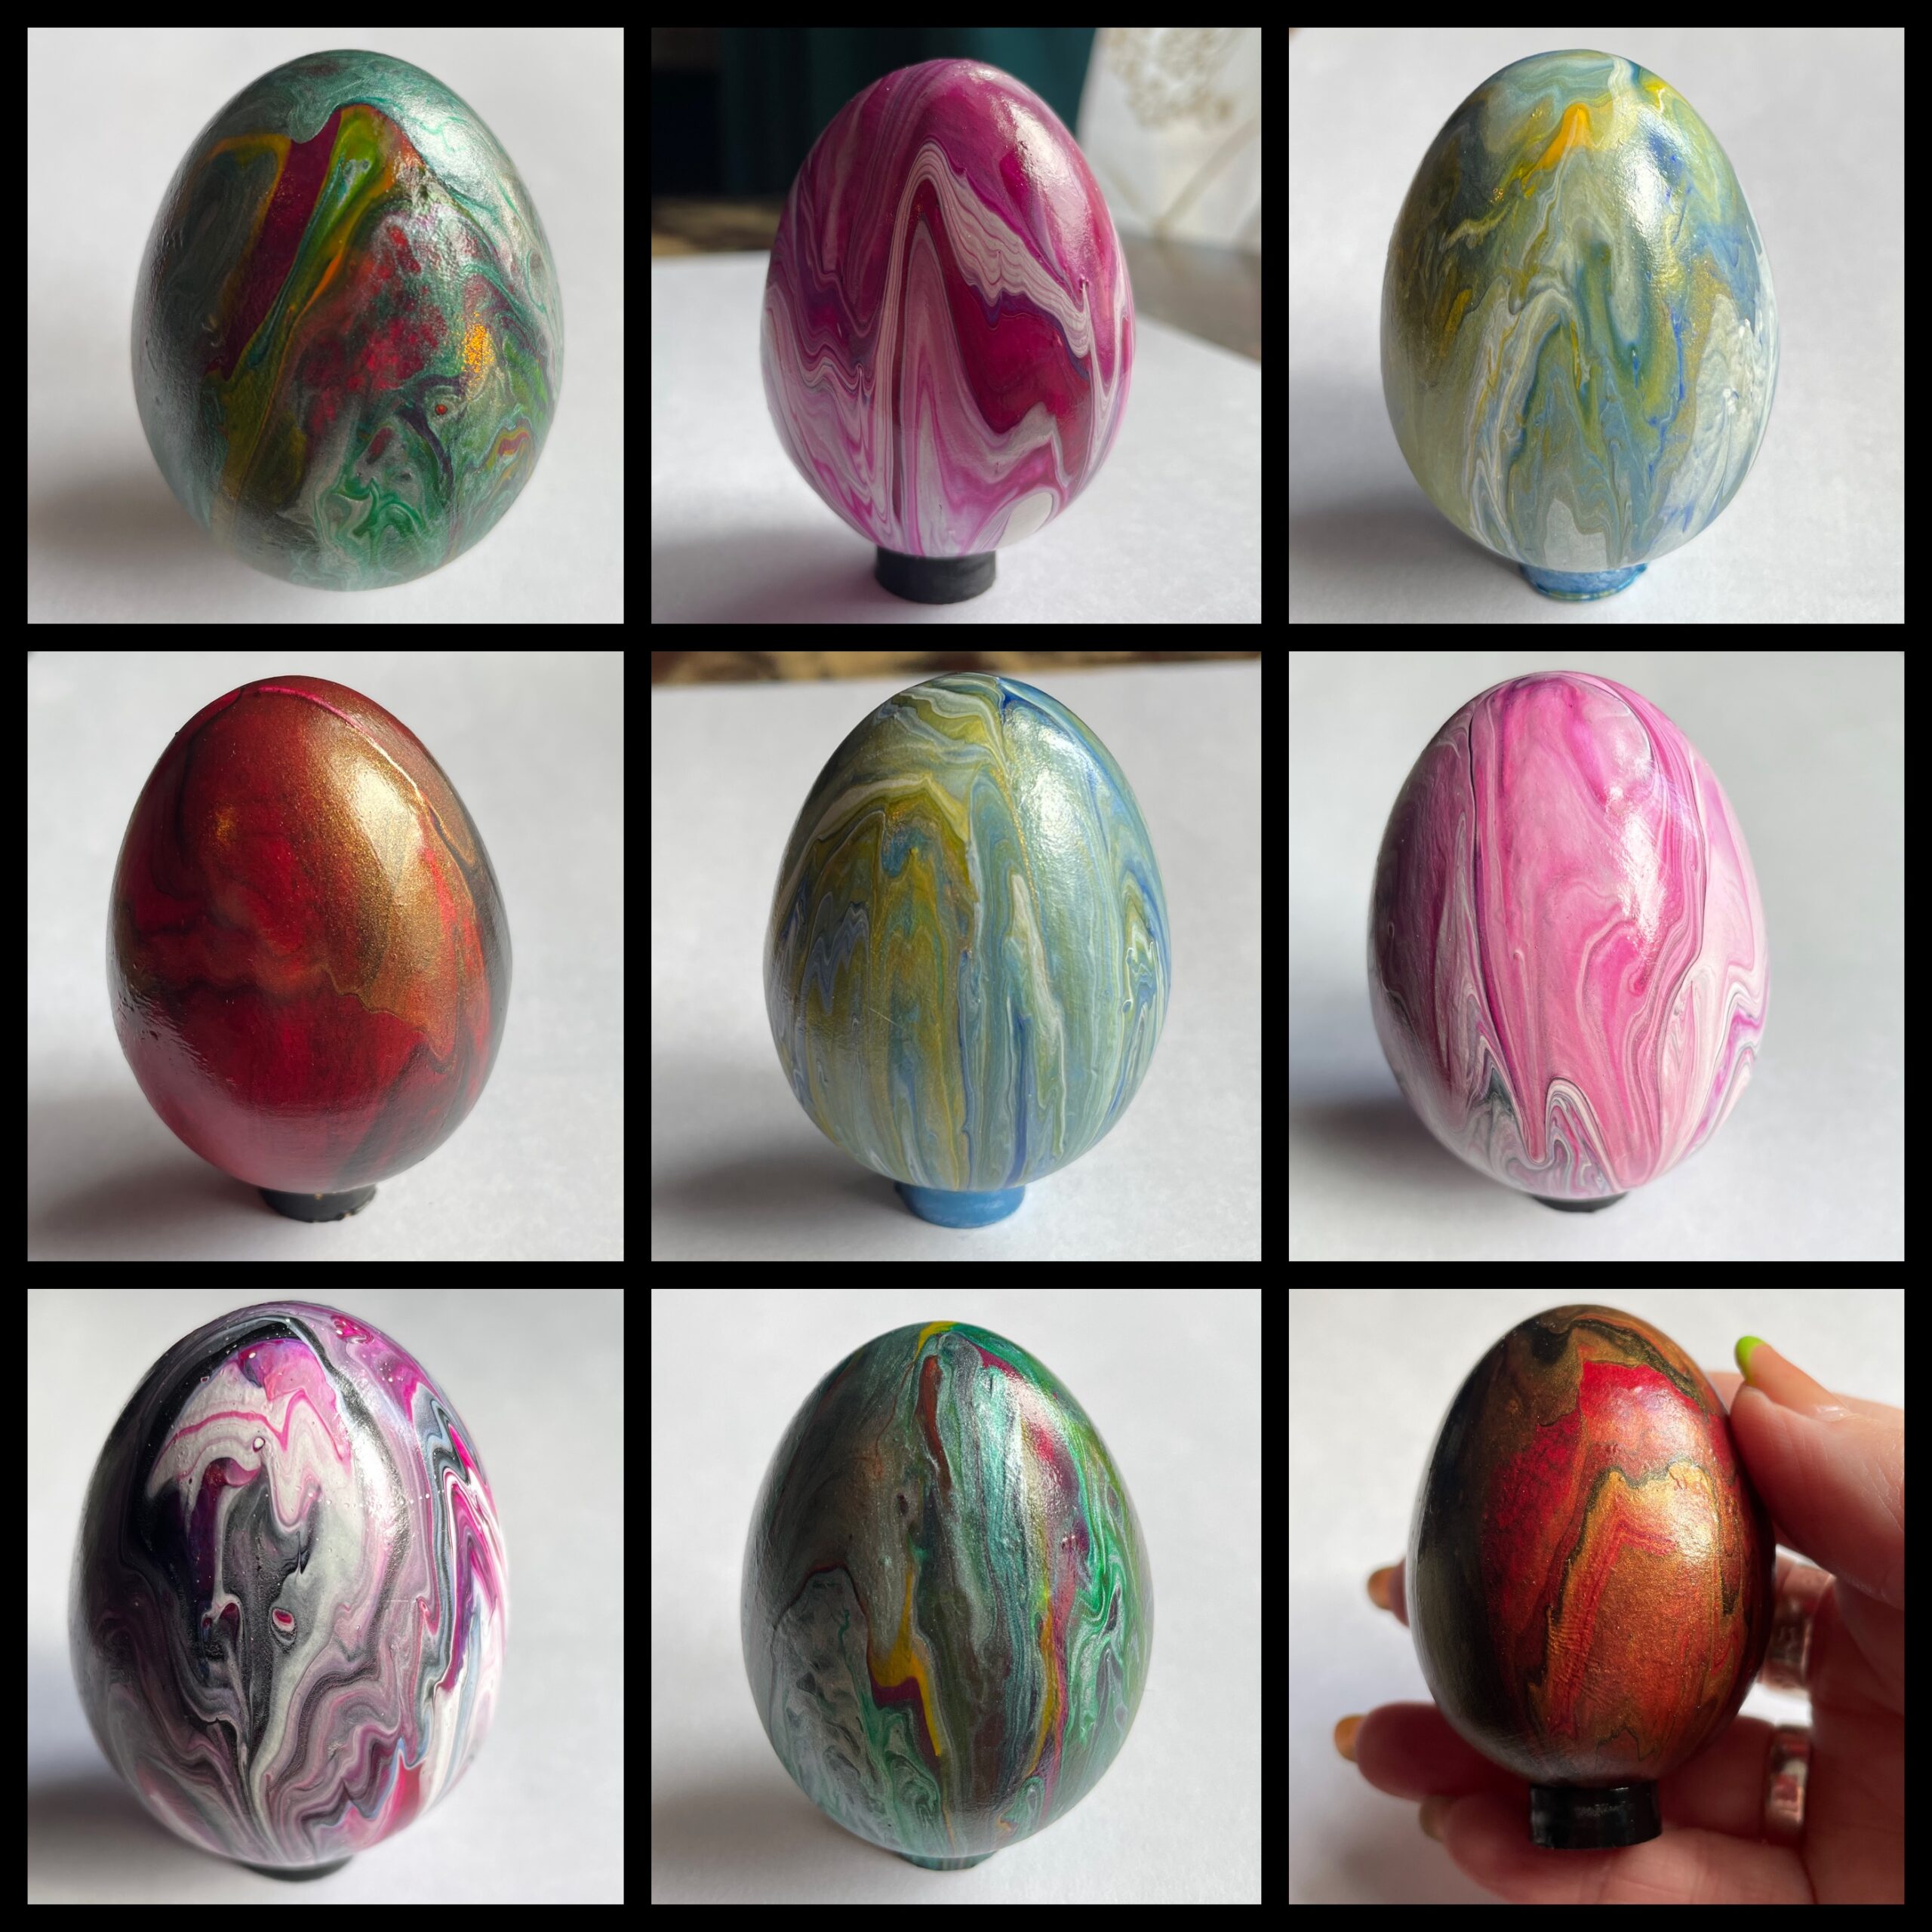 Hand painted ceramic eggs